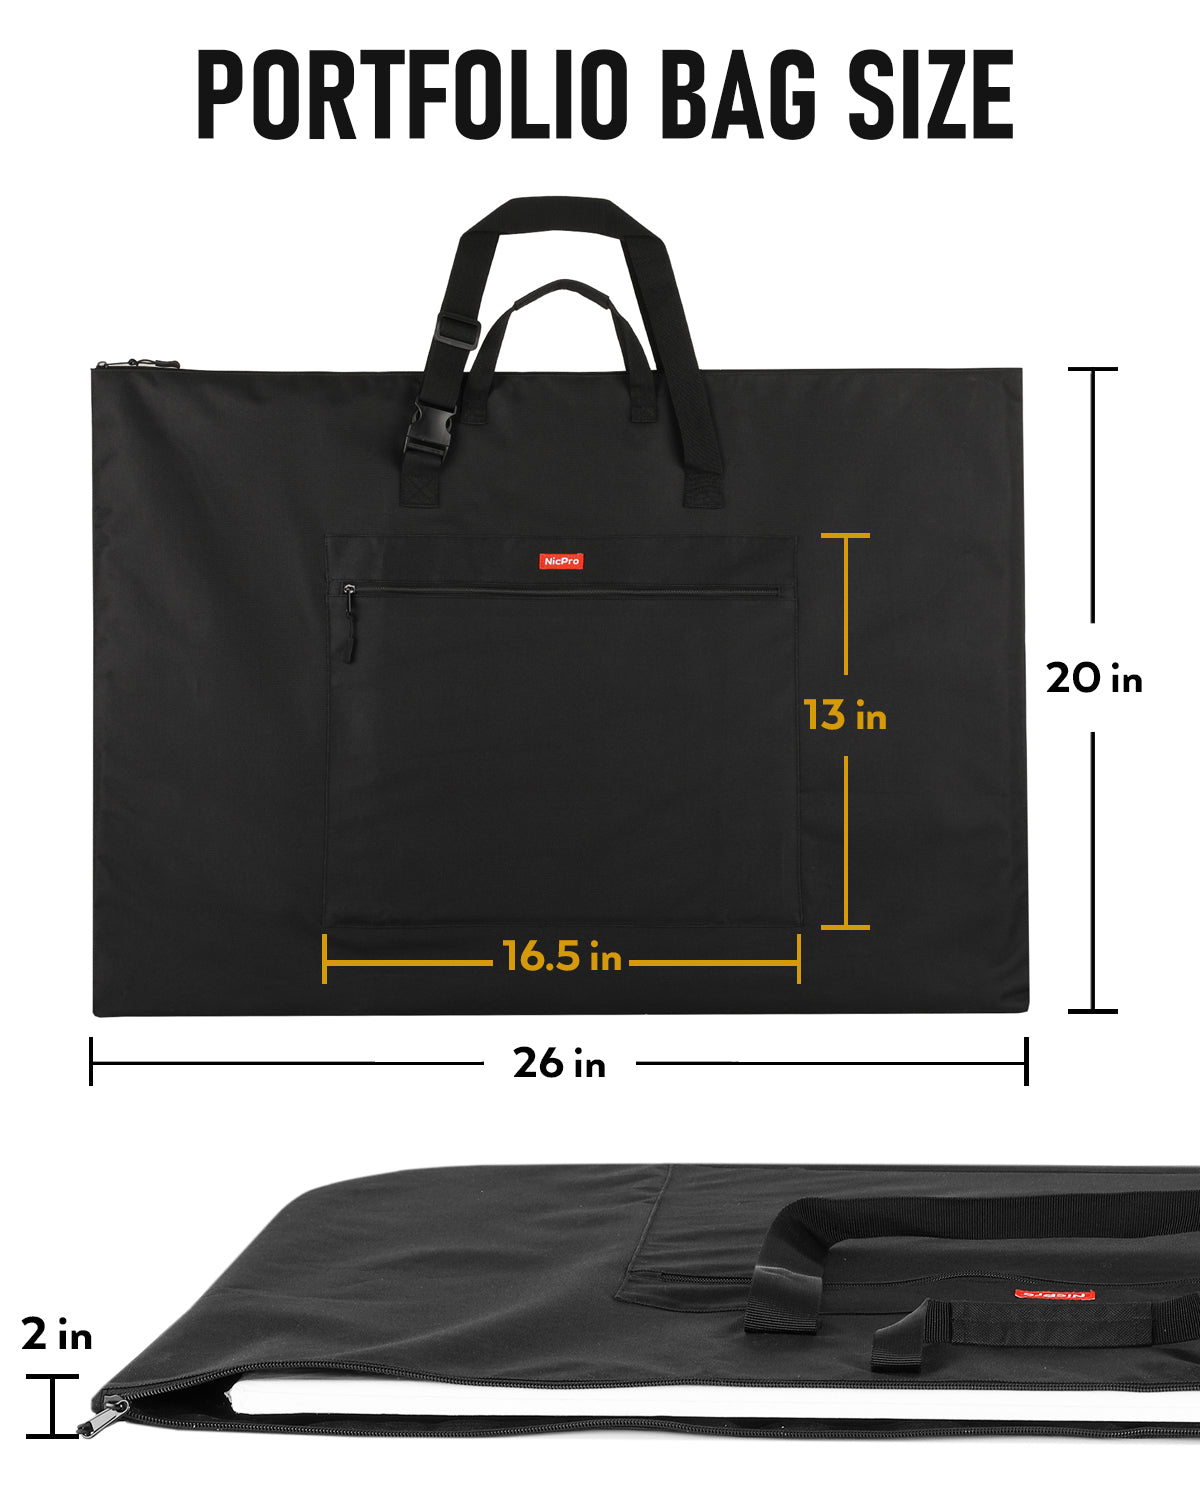 Nicpro Light Weight Art Portfolio Bag, 20 x 26 Inches Waterproof Nylon